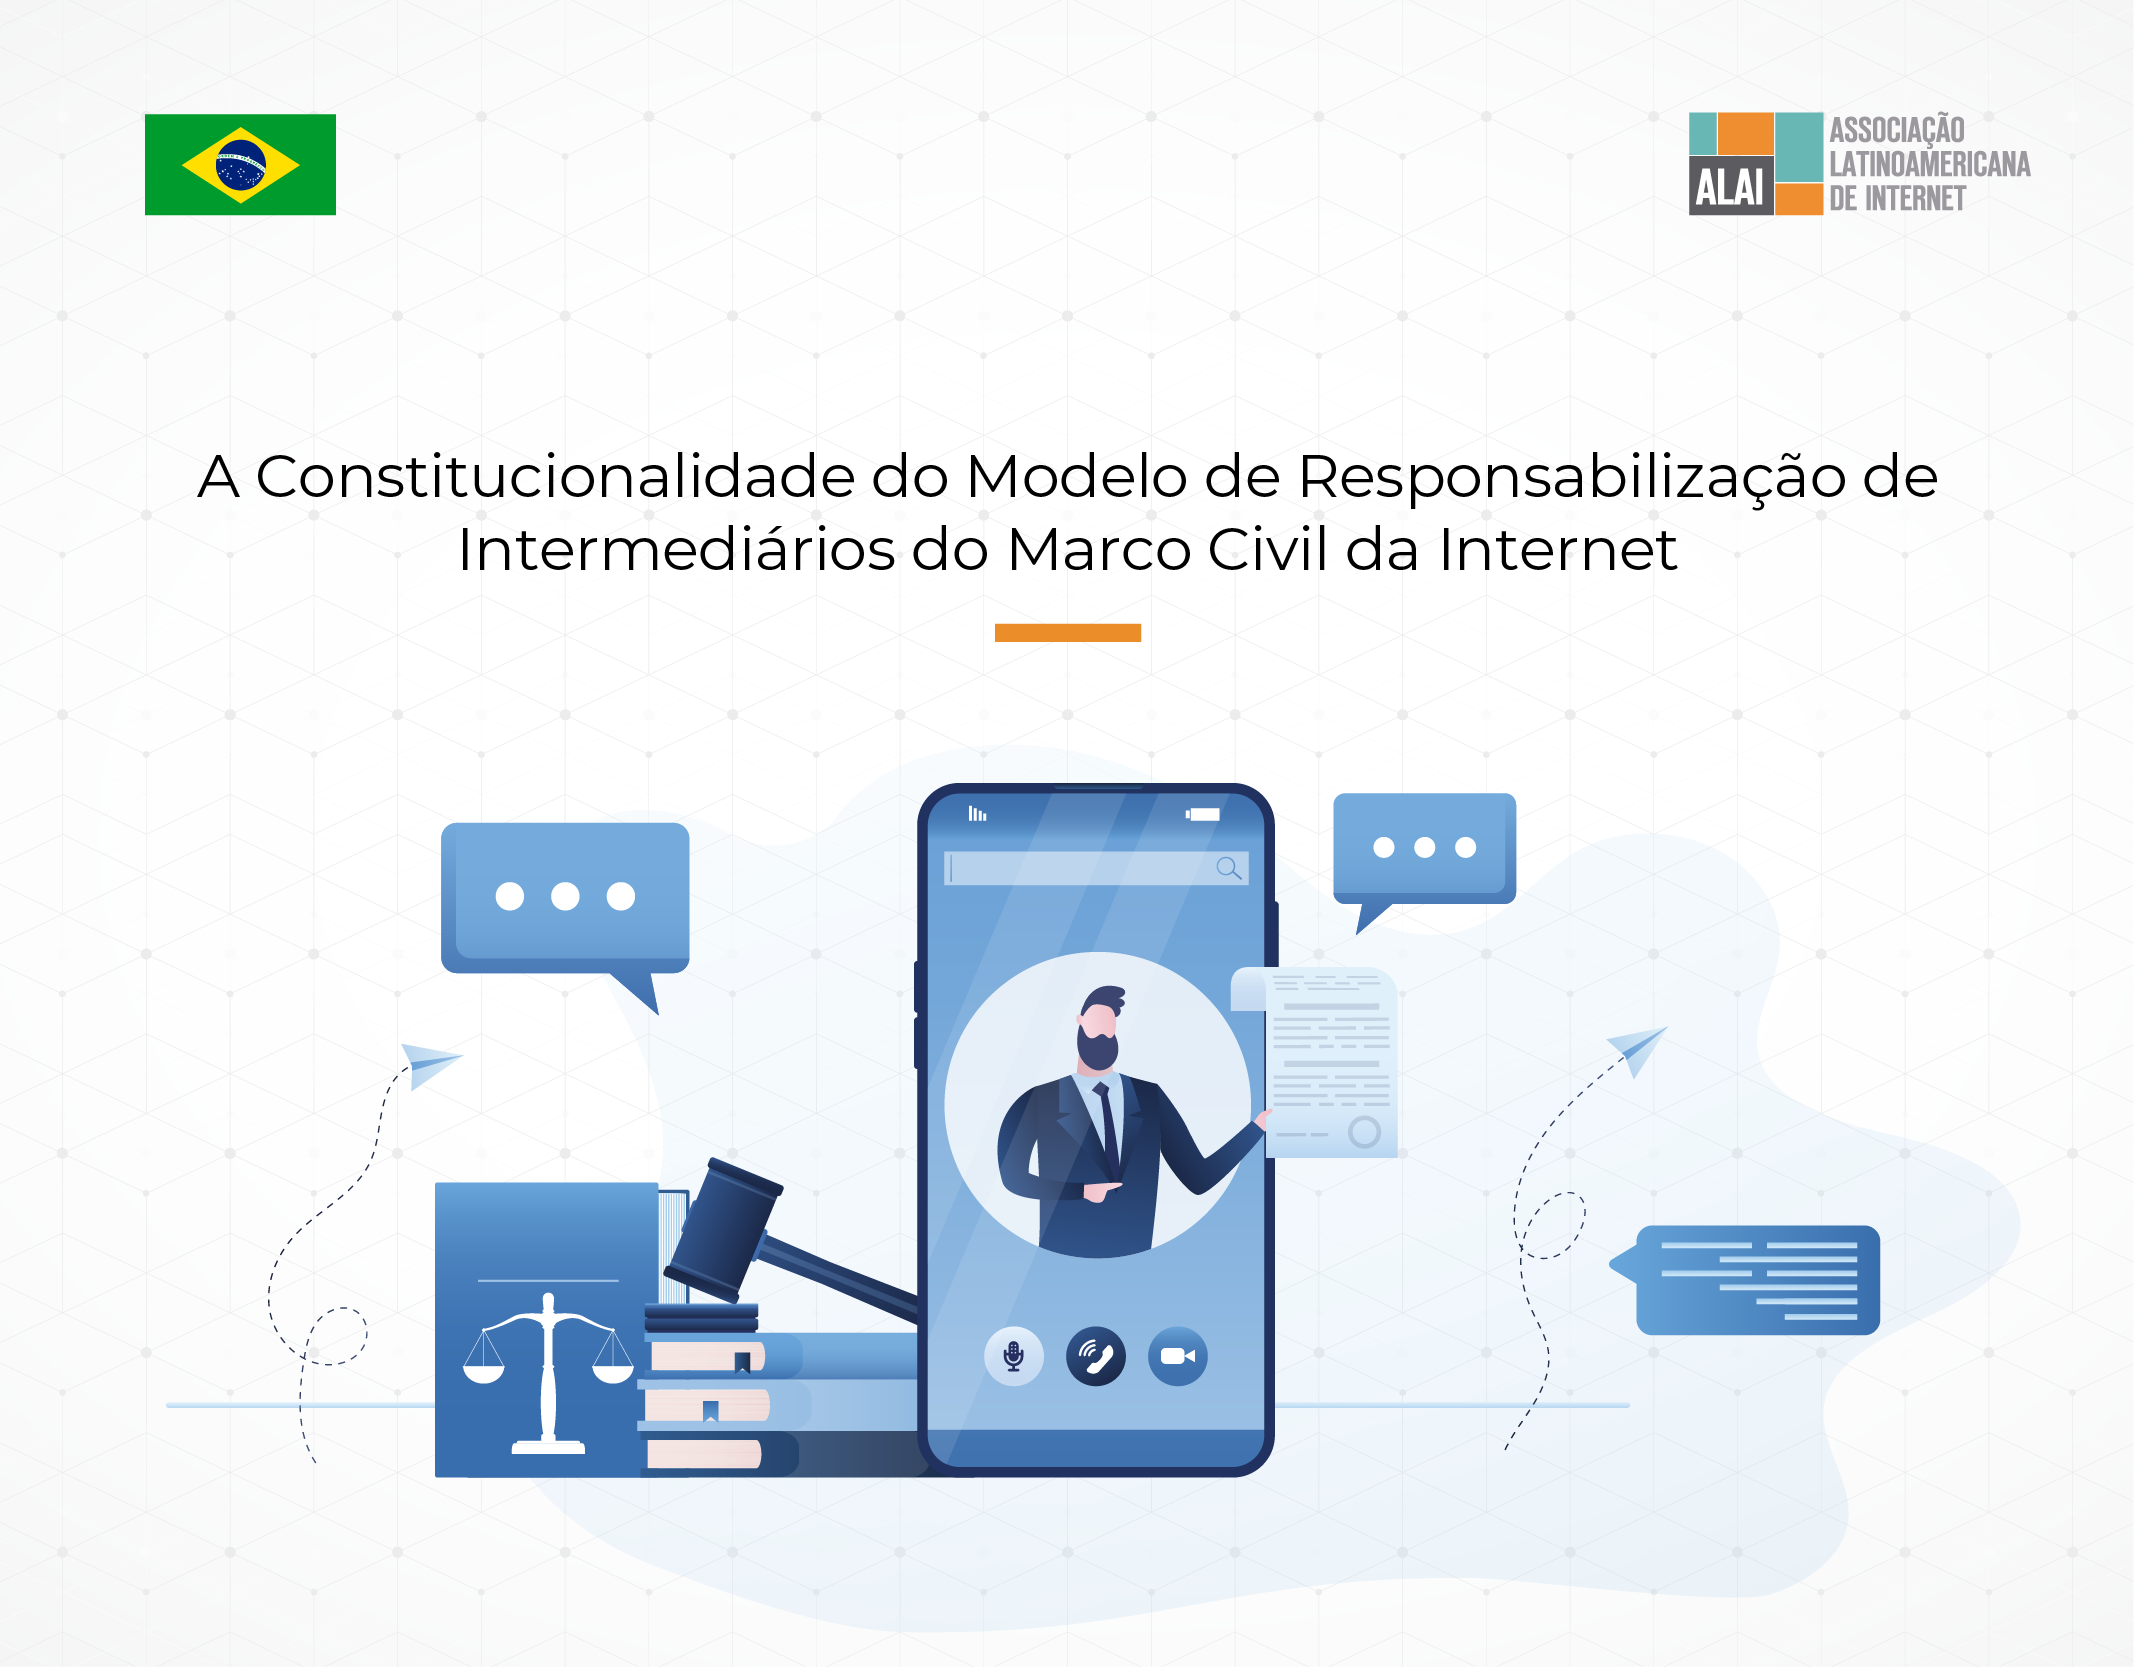 A Constitucionalidade do Modelo de Responsabilização de Intermediários do Marco Civil da Internet